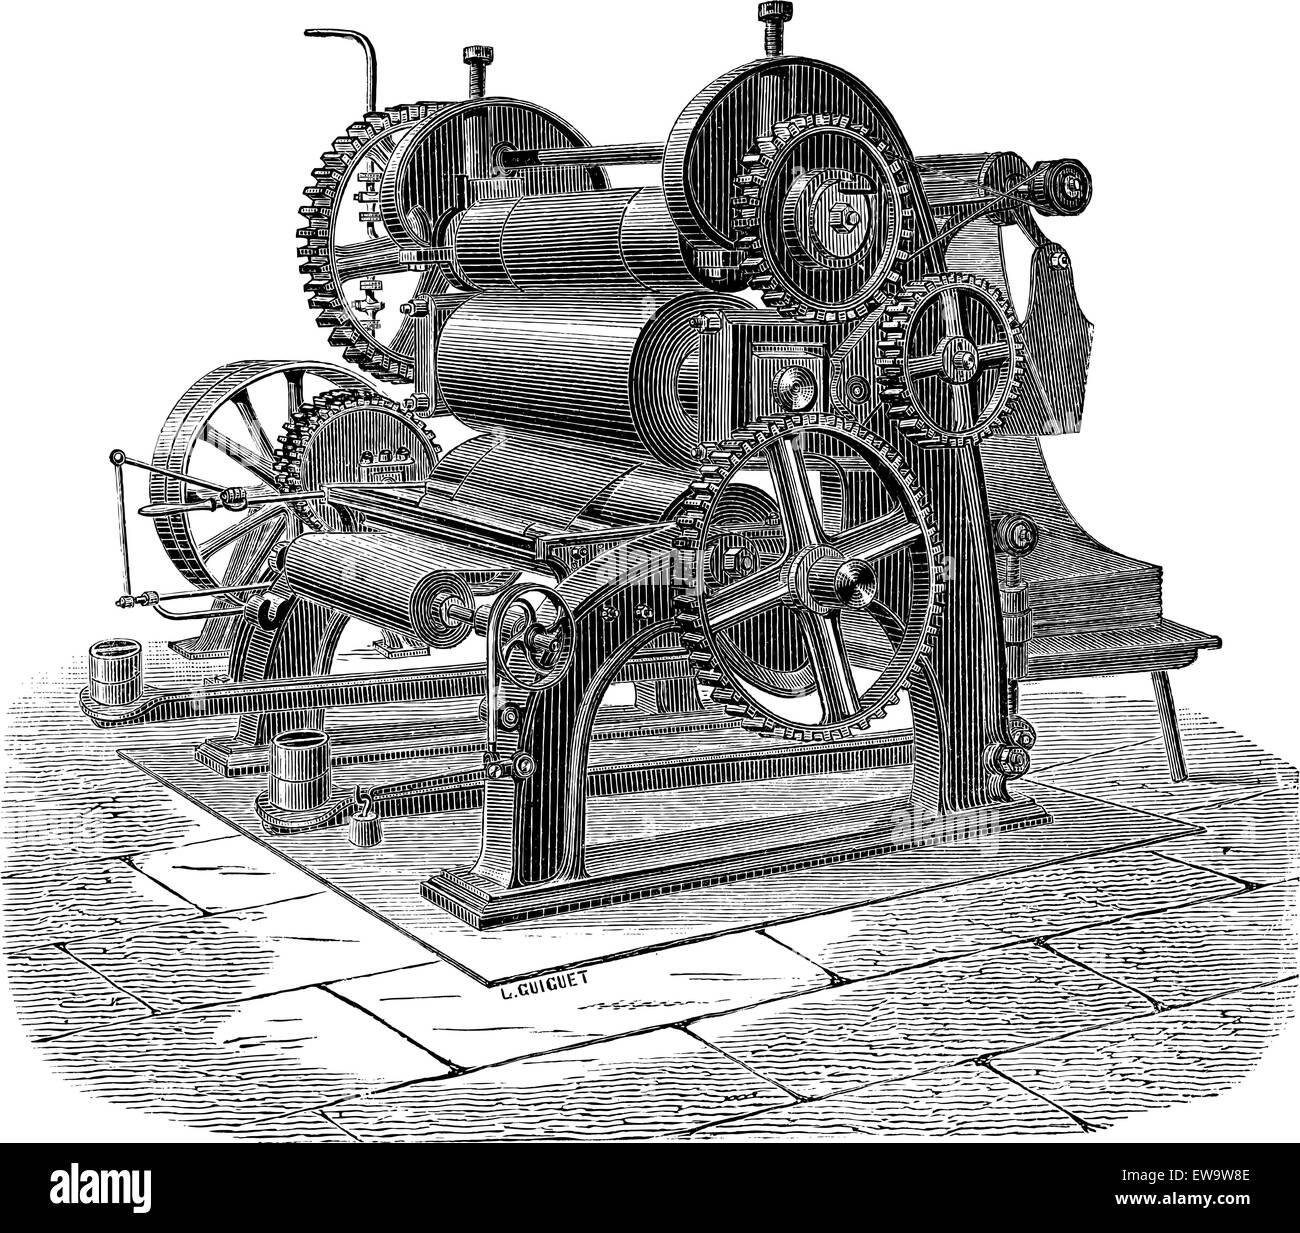 Papiermaschine mit drei Zylindern, graviert Vintage Illustration. Industrielle Enzyklopädie - E.O Lami - 1875 Stock Vektor